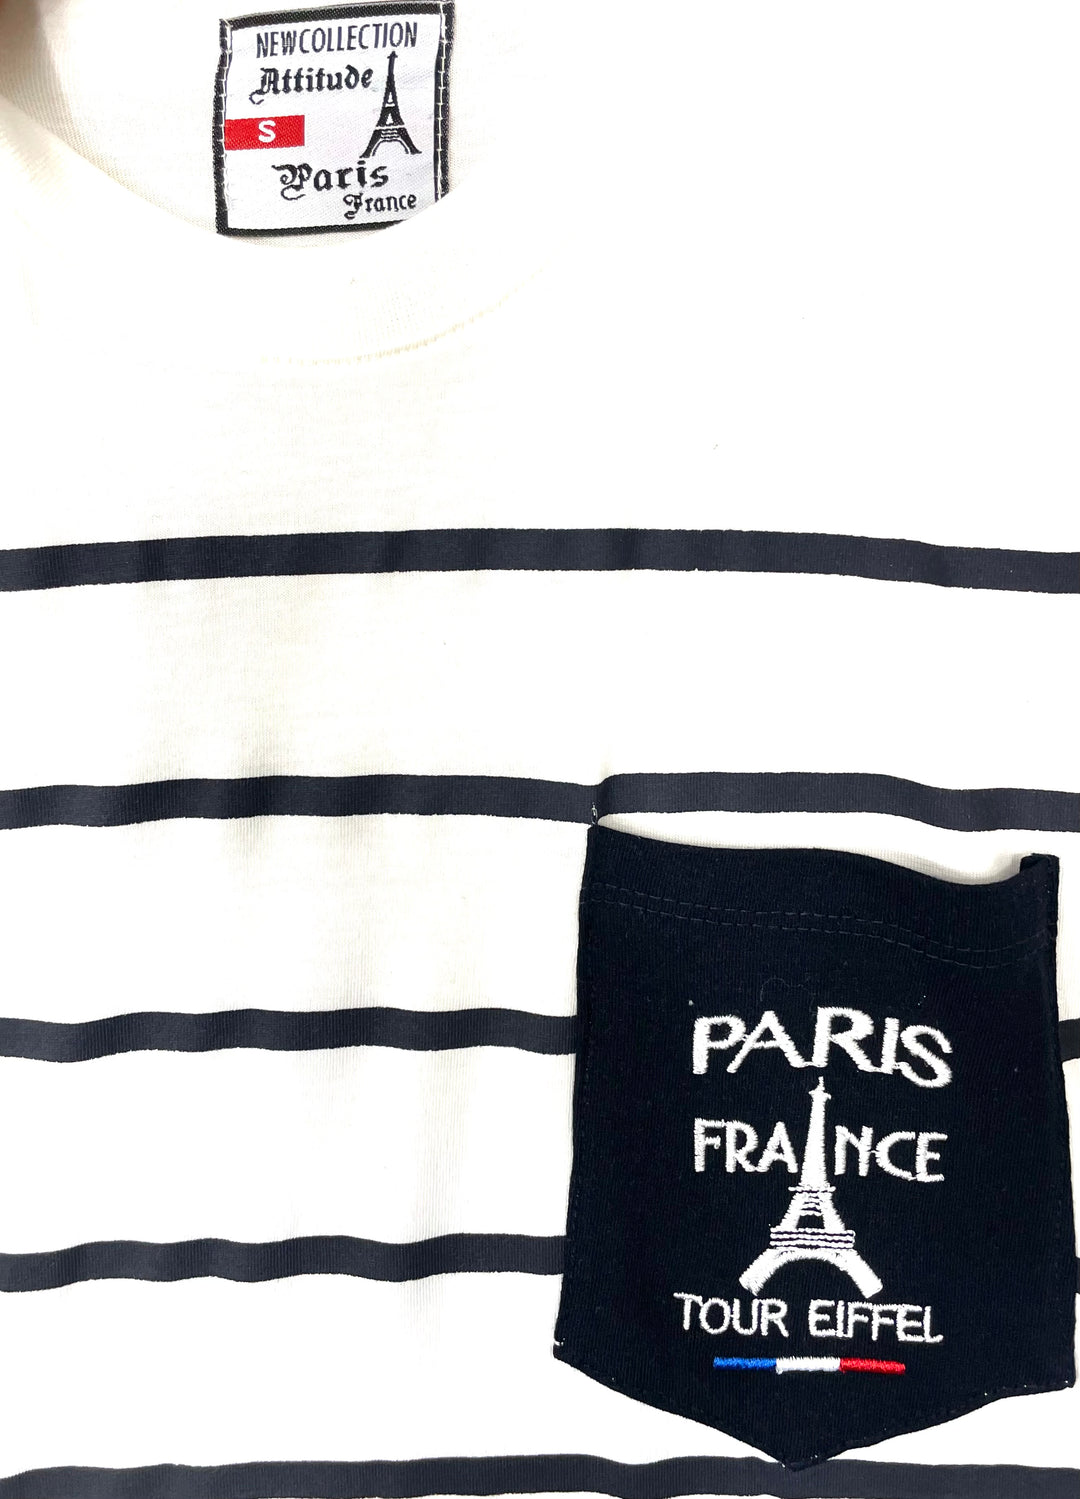 Tee shirt Tour Eiffel France brodé